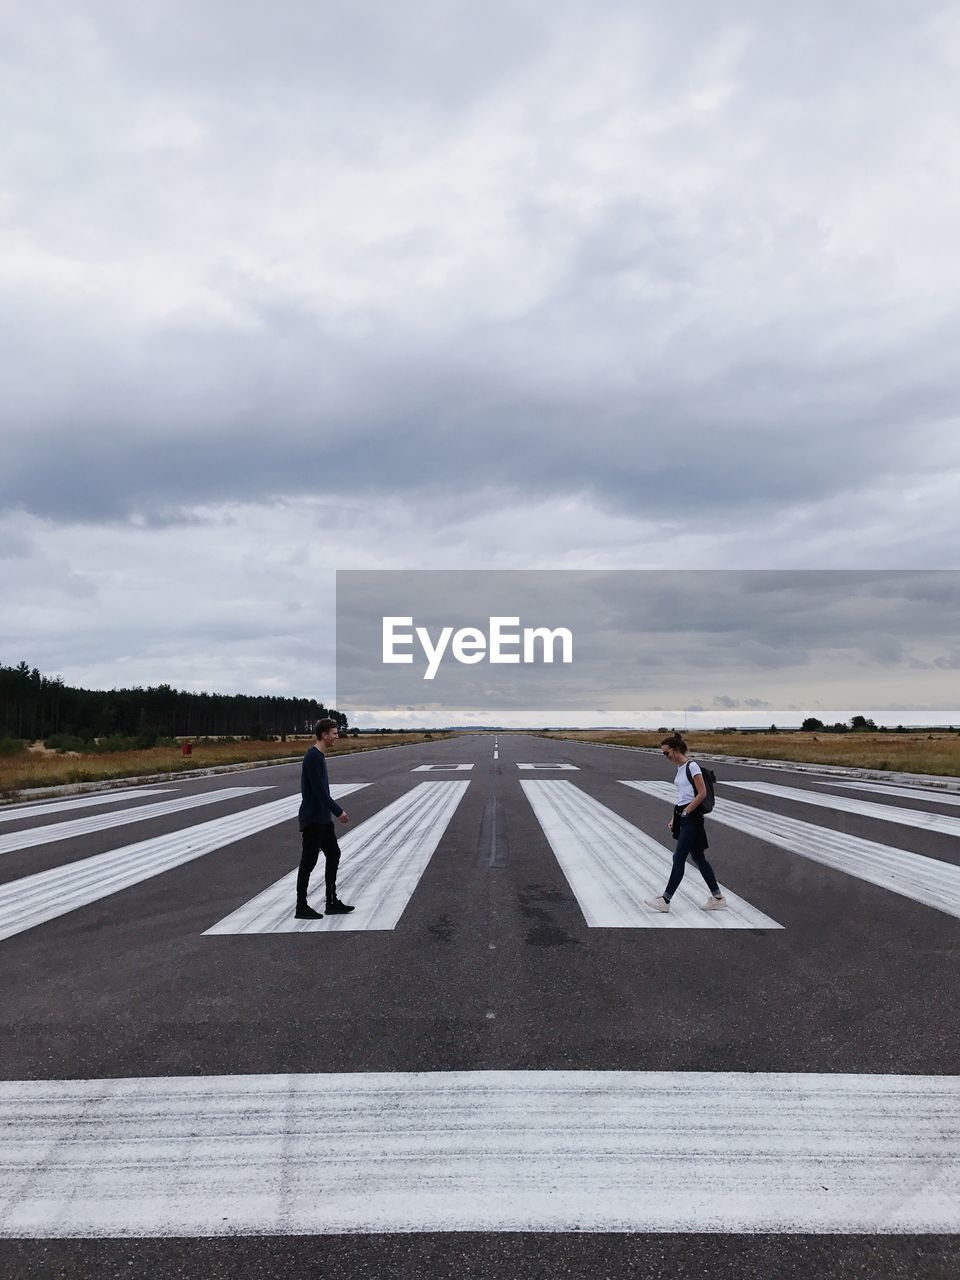 Friends walking on runway against cloudy sky